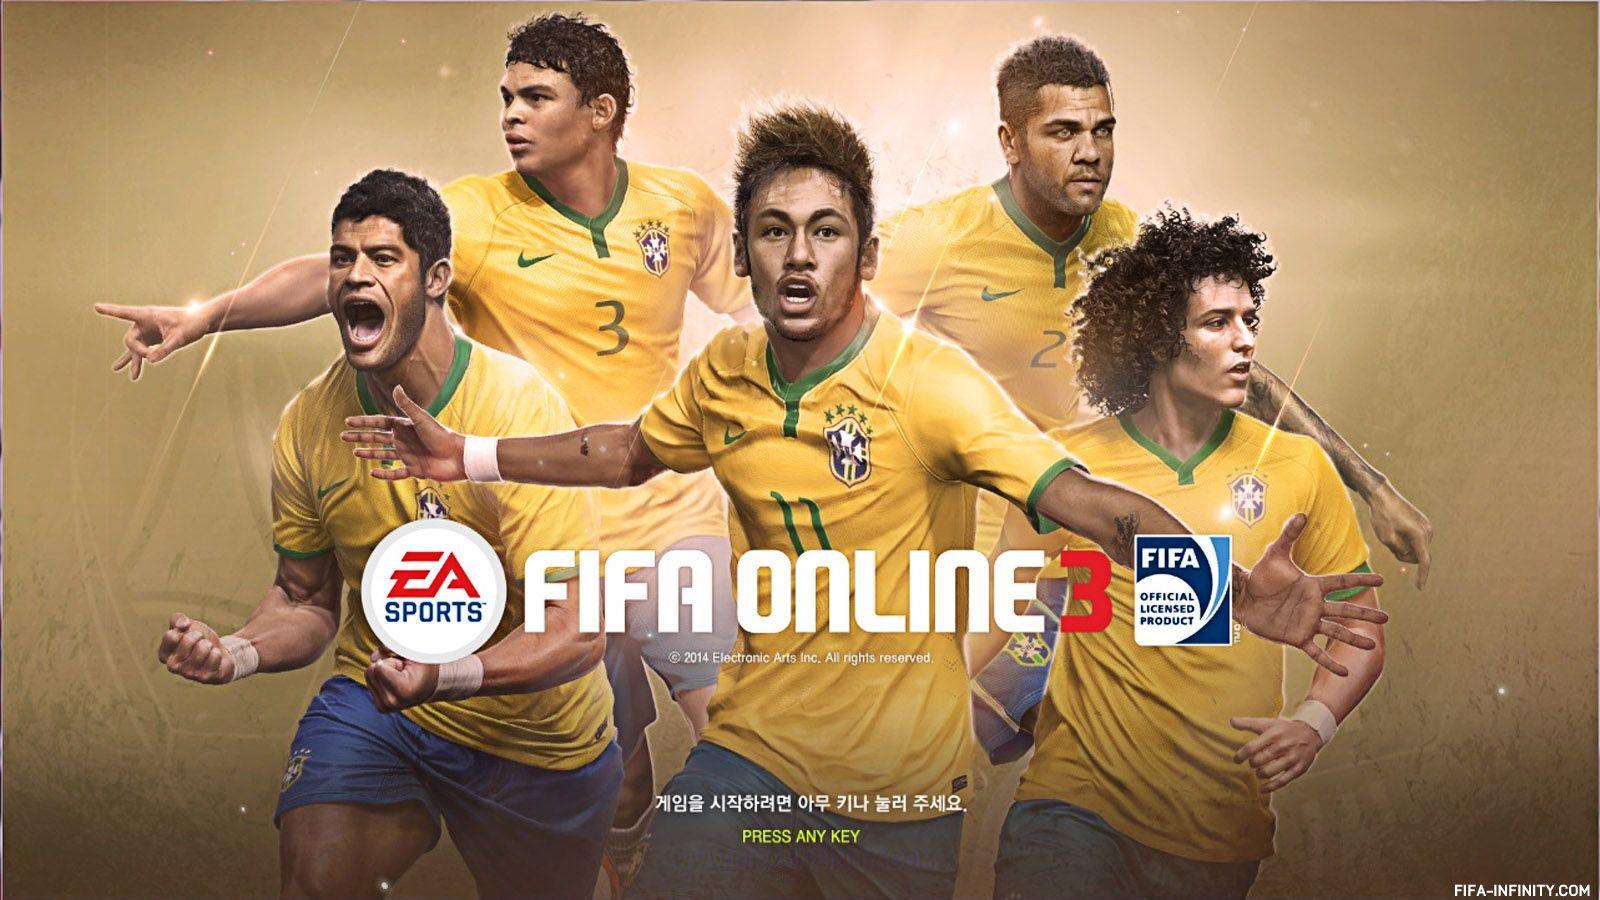 Tải 999 Hình Nền FIFA Online 3 Cho Máy Tính Đẹp Nhất 2018